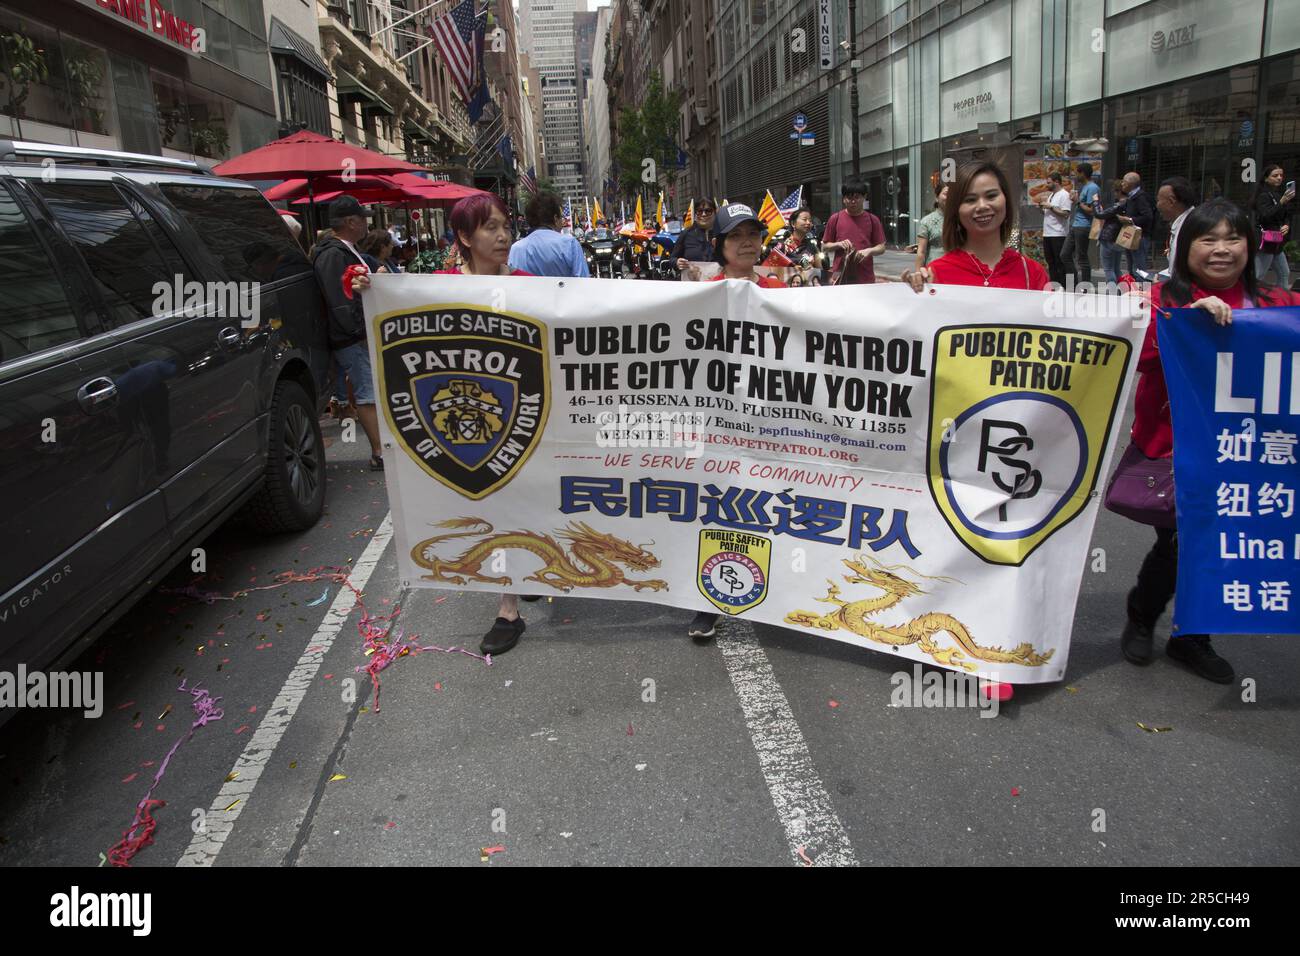 2023 Asian American Pacific Islander Heritage Parade a NYC marches up 6th Avenue nel centro di Manhattan, NYC. L'organizzazione asiatica di pattuglia per la pubblica sicurezza si è fatta maree nella parata. Foto Stock